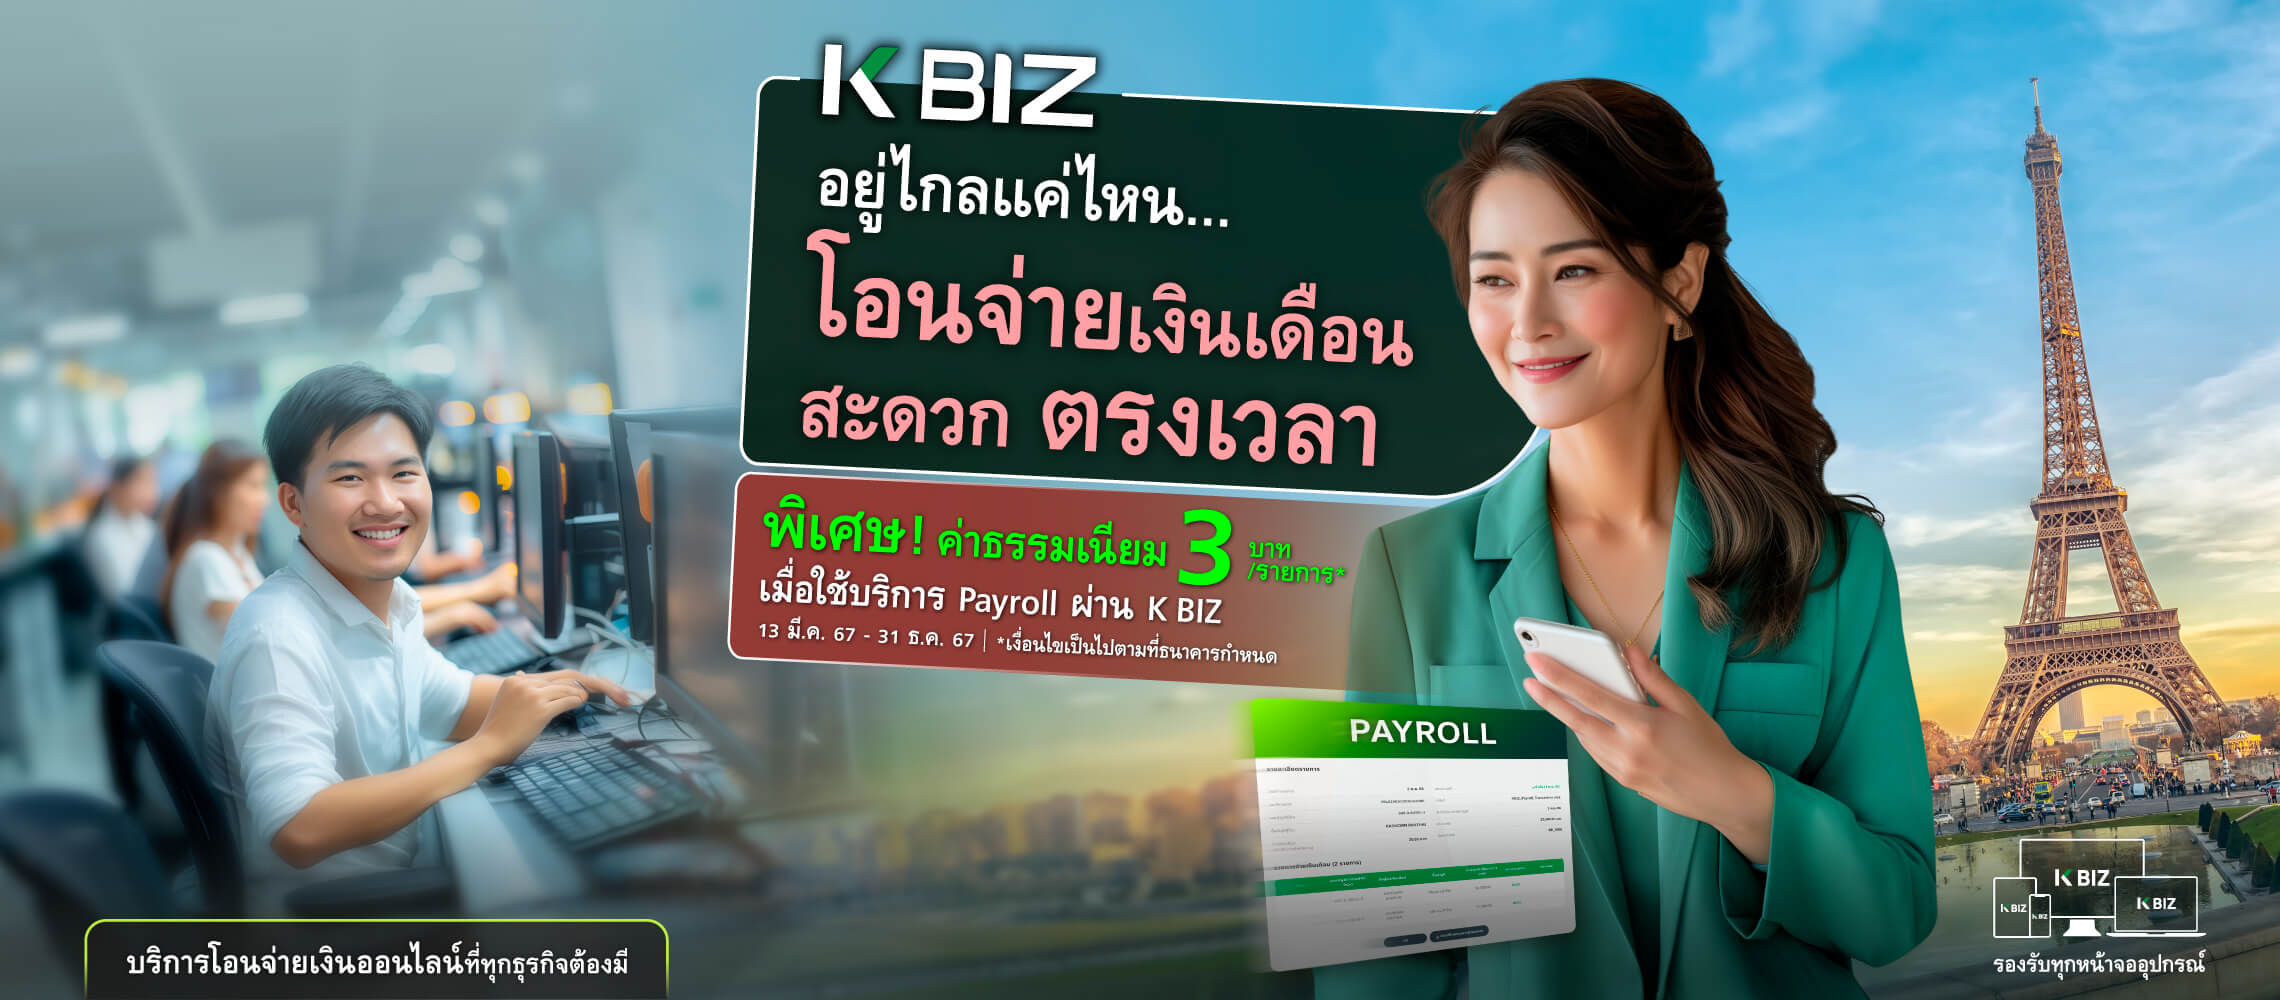 Payroll โอนจ่ายเงินเดือนพนักงาน ผ่าน K BIZ รับประกันอุบัติเหตุ ฟรี
              